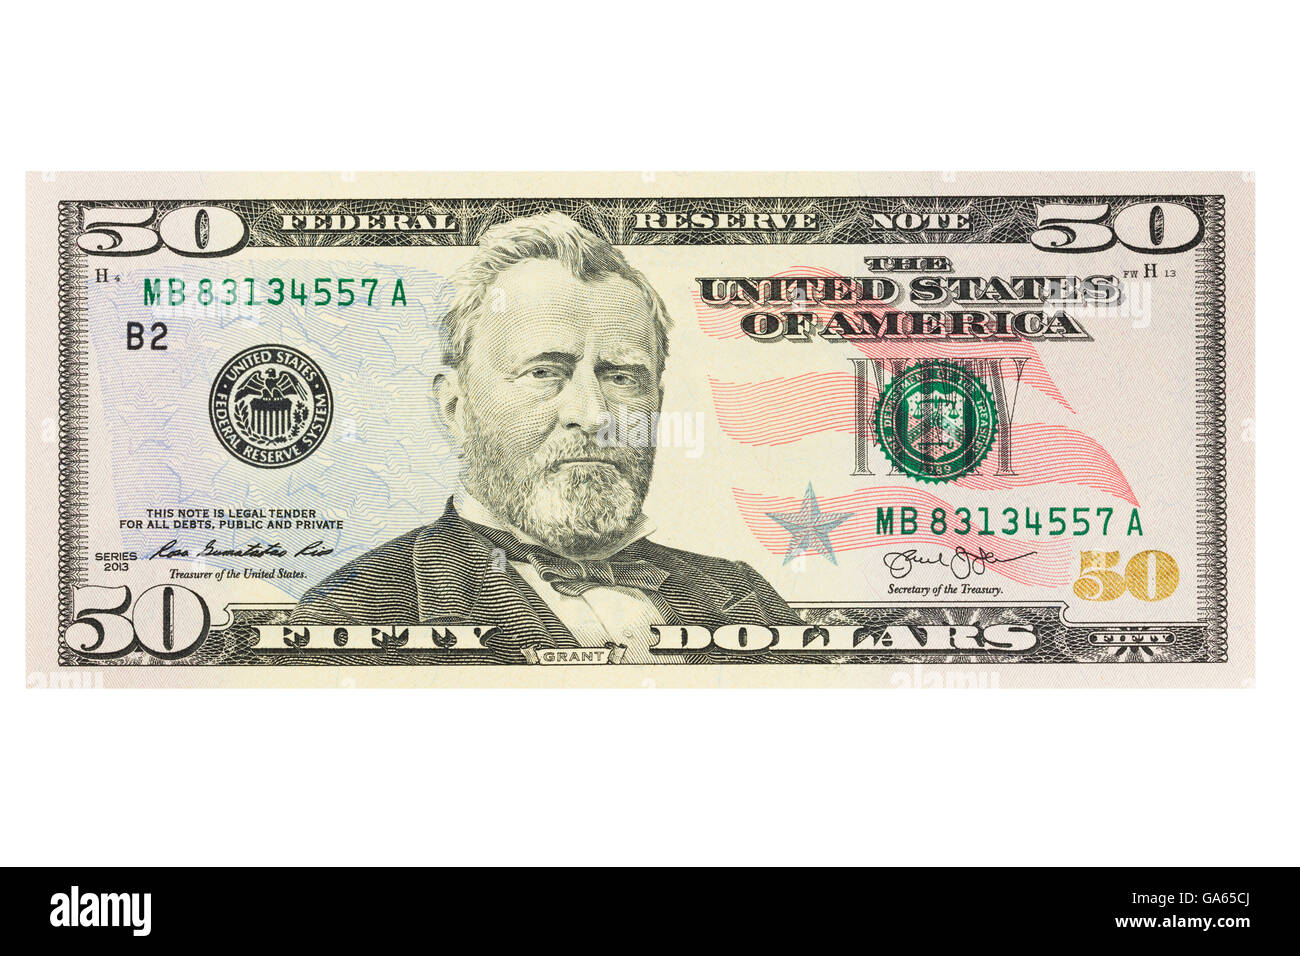 Cinquante américains us dollar note sur un fond blanc Banque D'Images